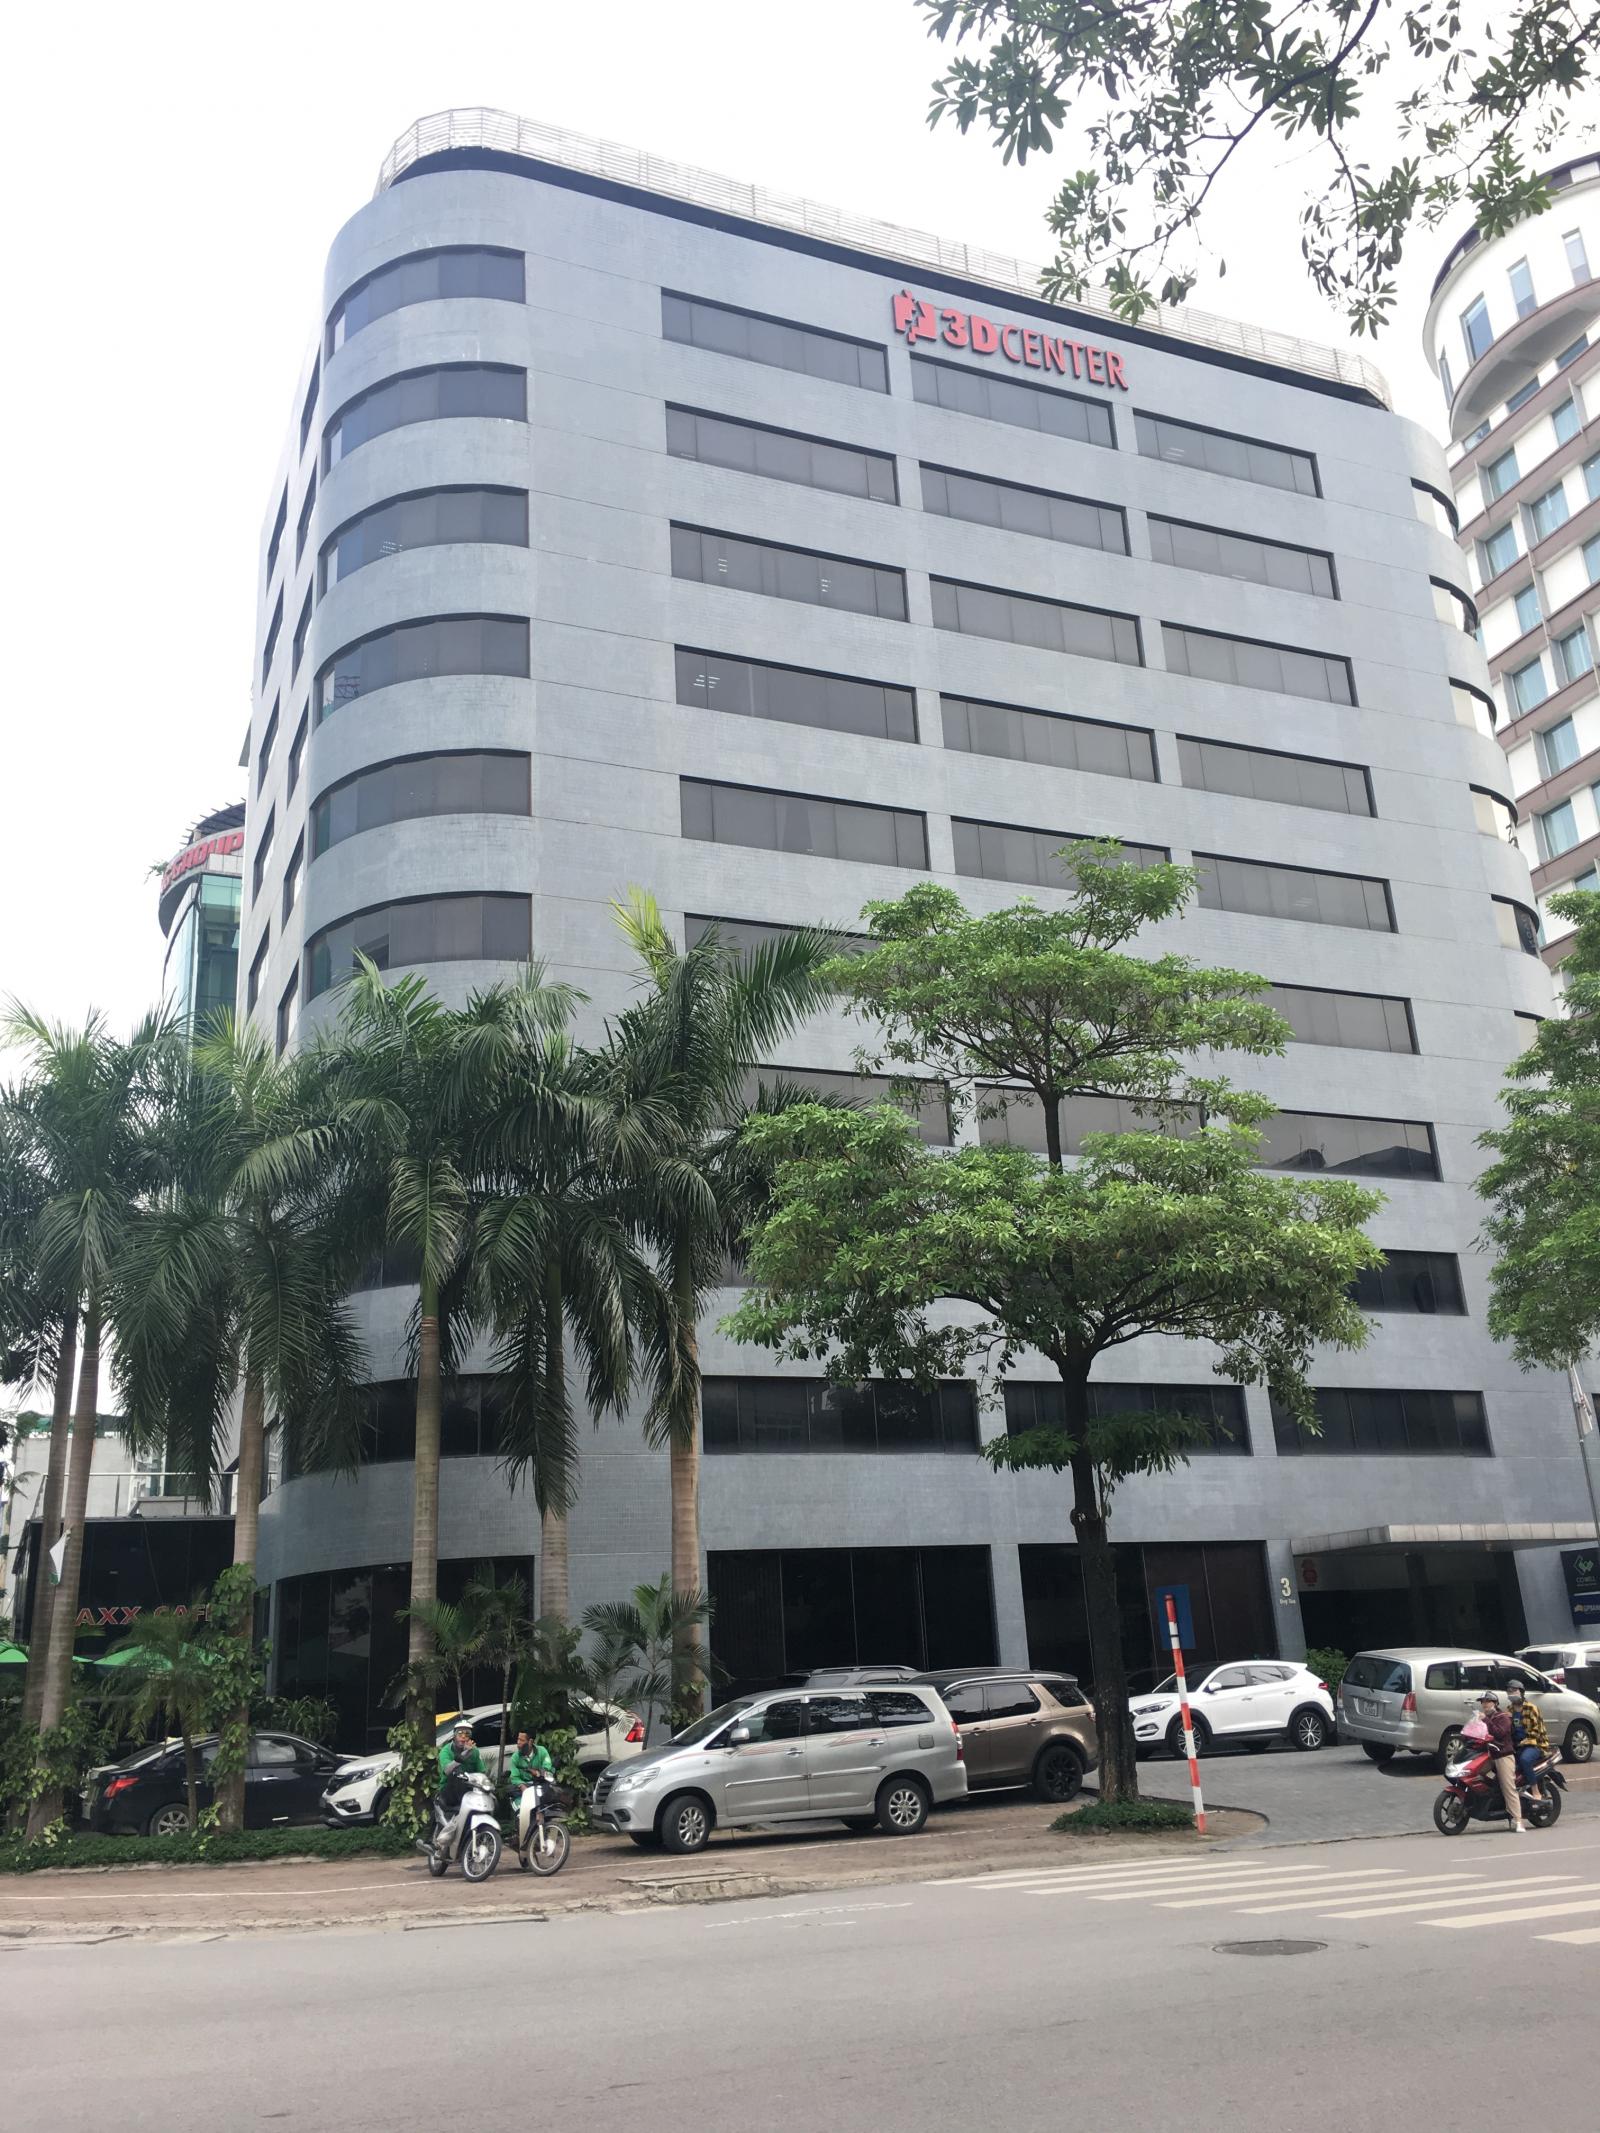 Cho thuê văn phòng tòa 3D Center Duy Tân - Quận Cầu Giấy. Diện tích từ 150m2 Giá tốt nhất thị